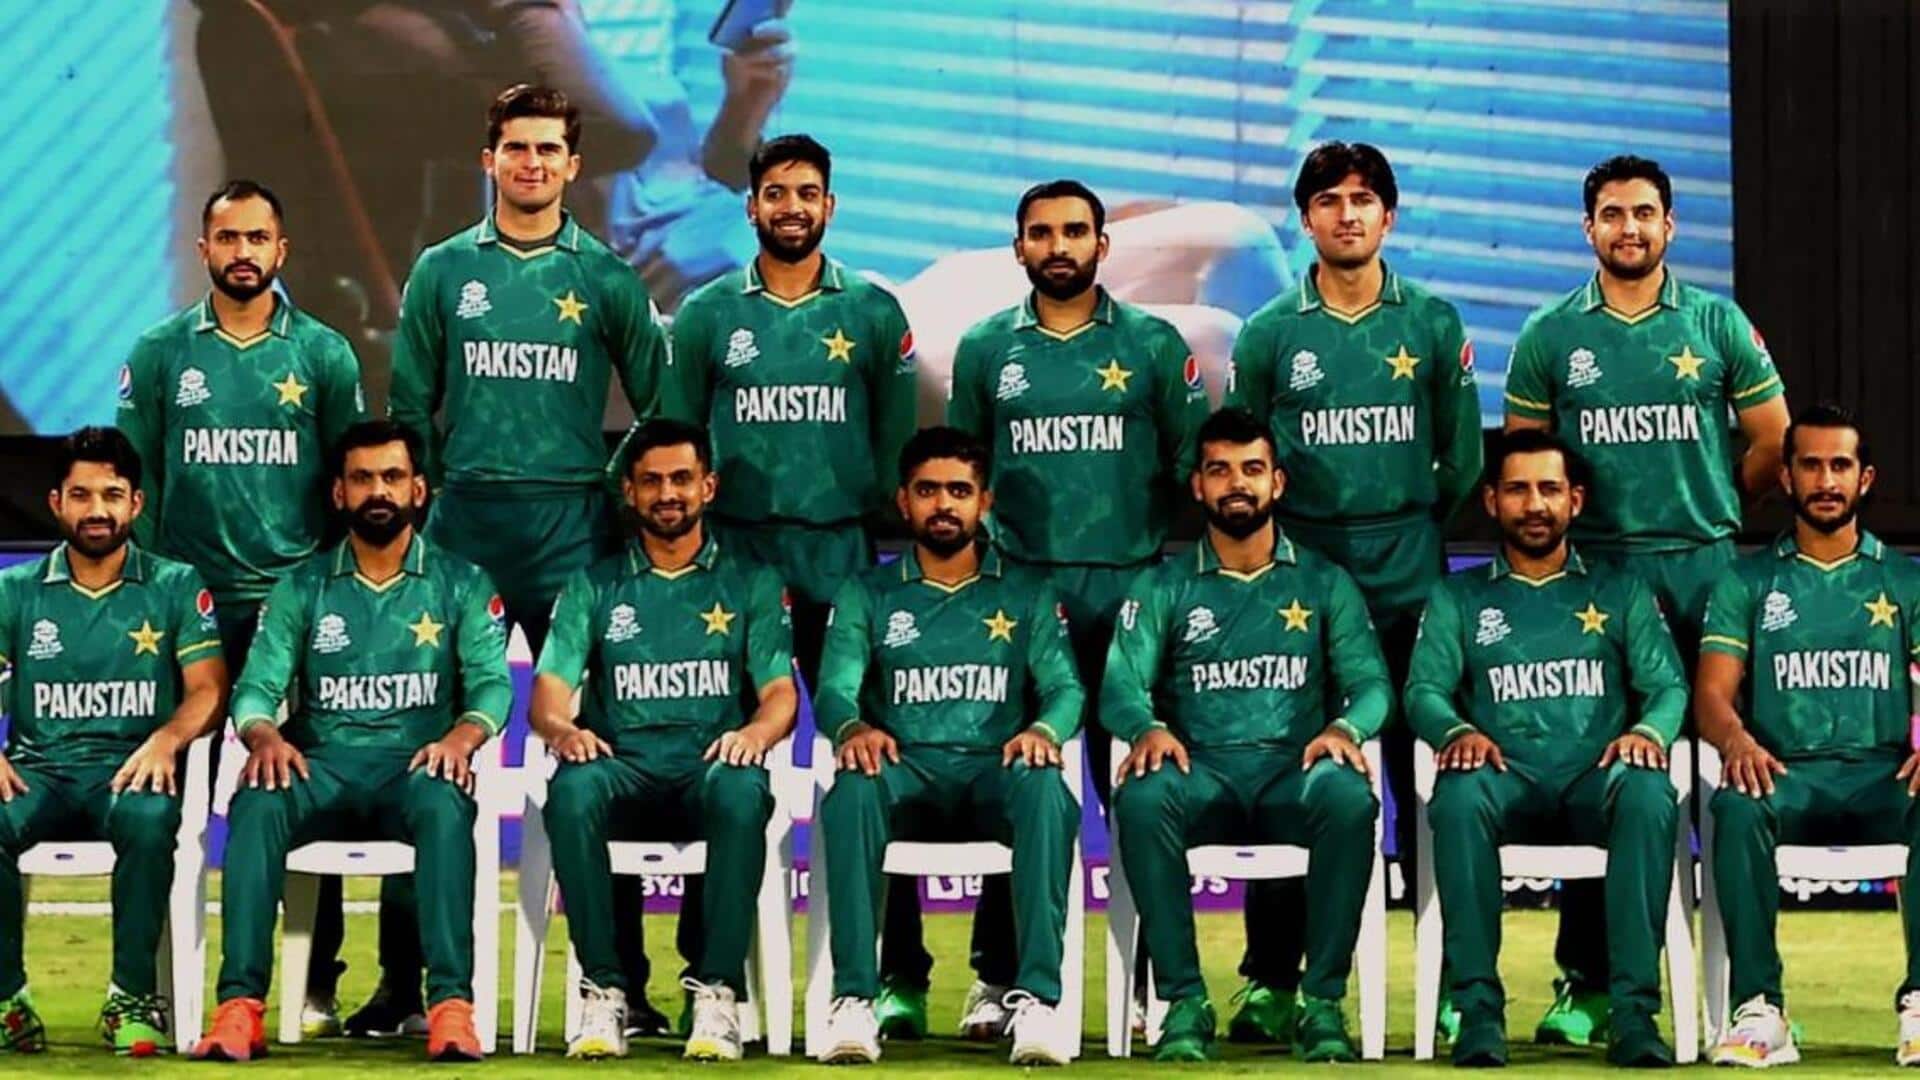 एशिया कप में पाकिस्तान क्रिकेट टीम के सफर पर एक नजर 